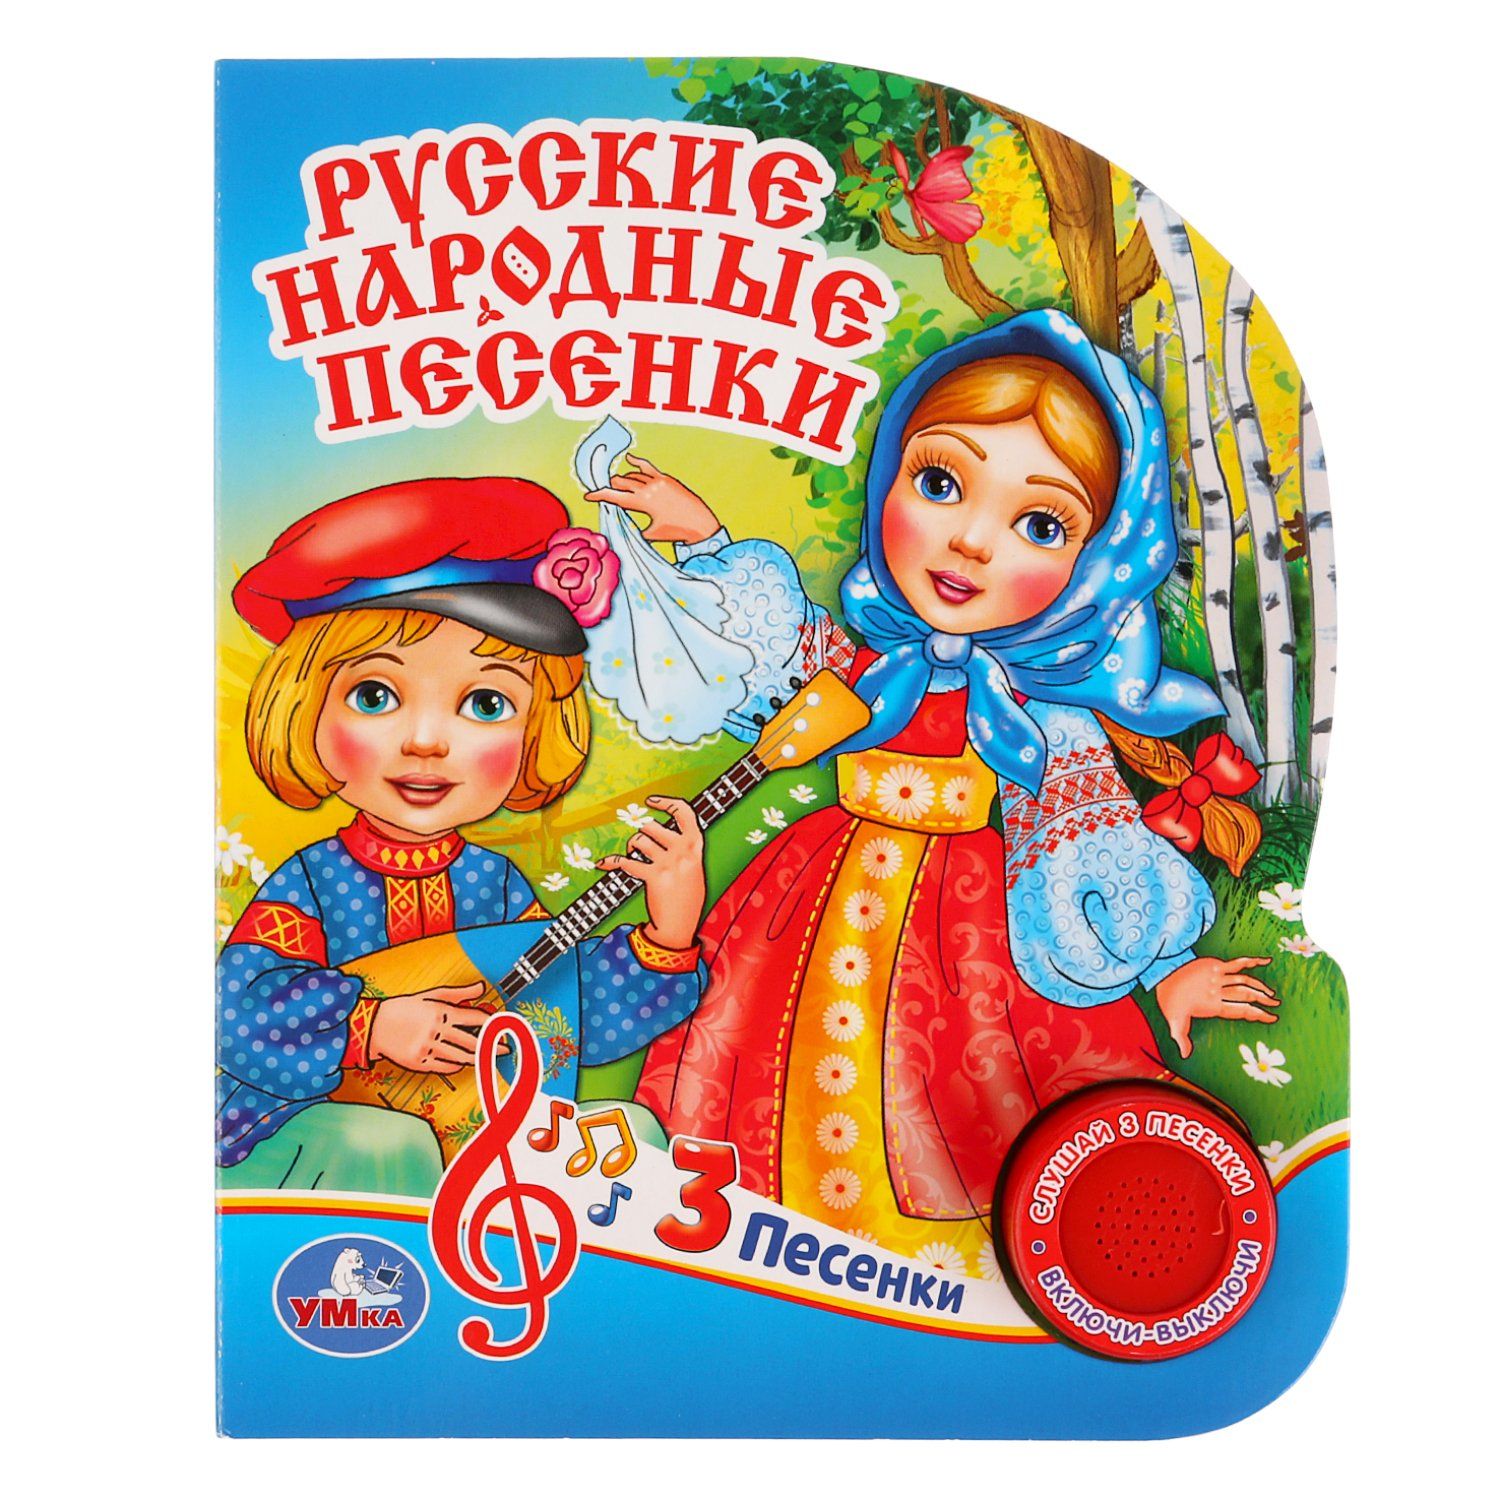 Веселые русские народные песни для детей